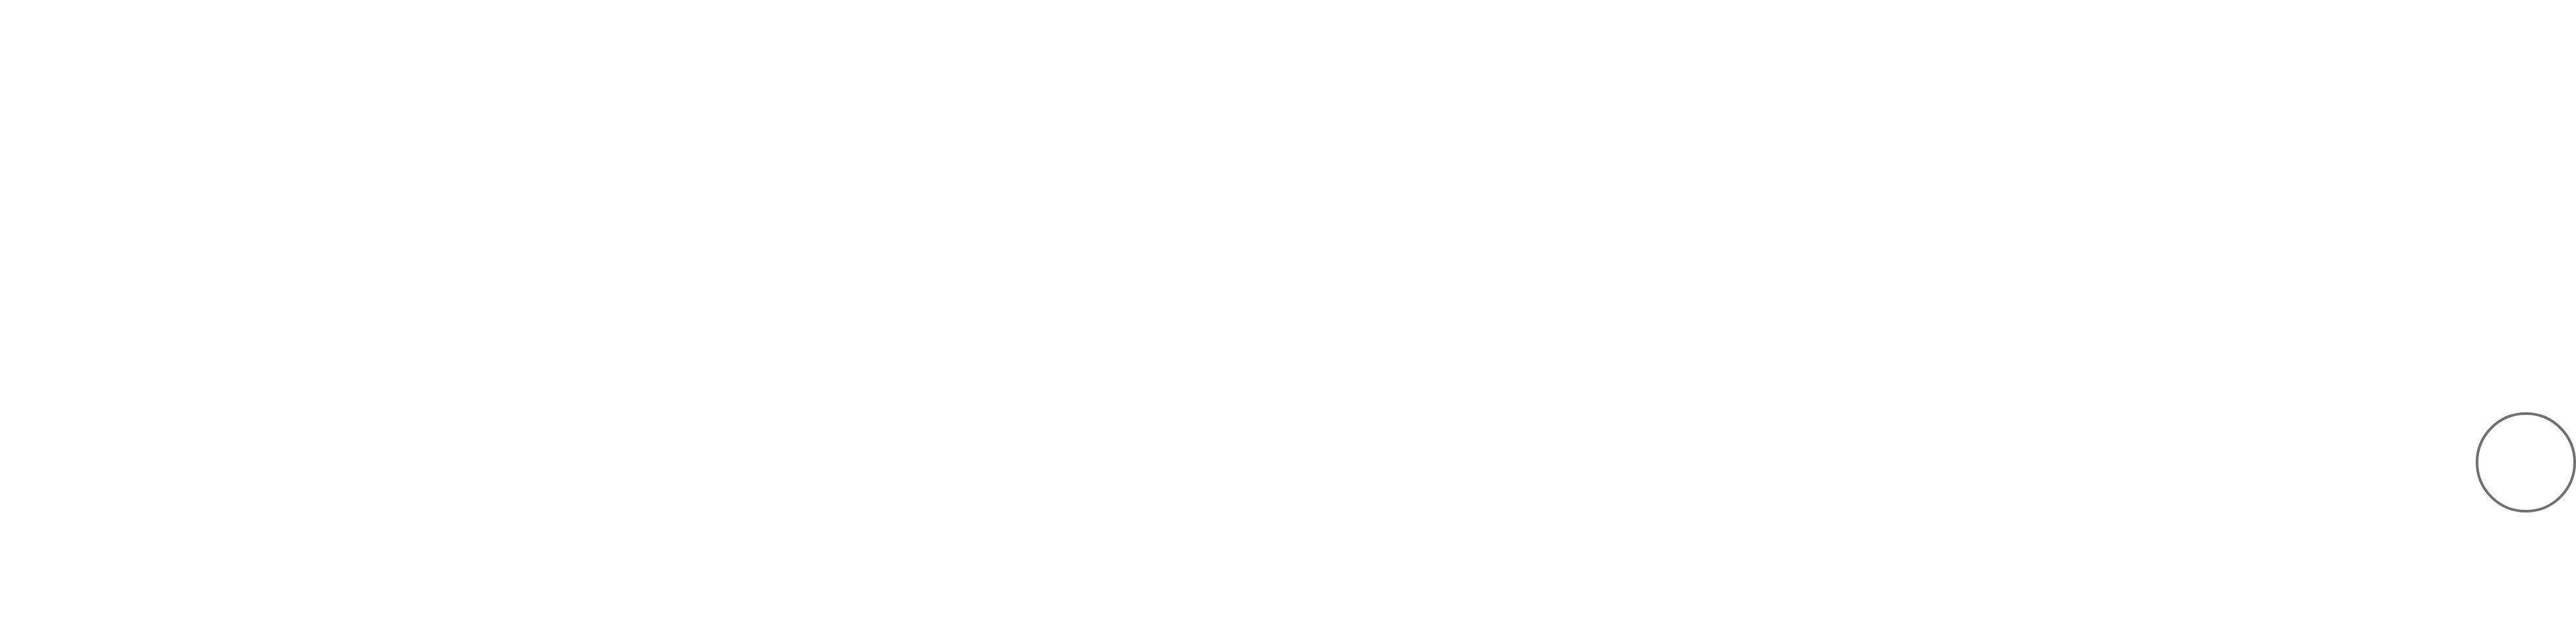 finshark logo